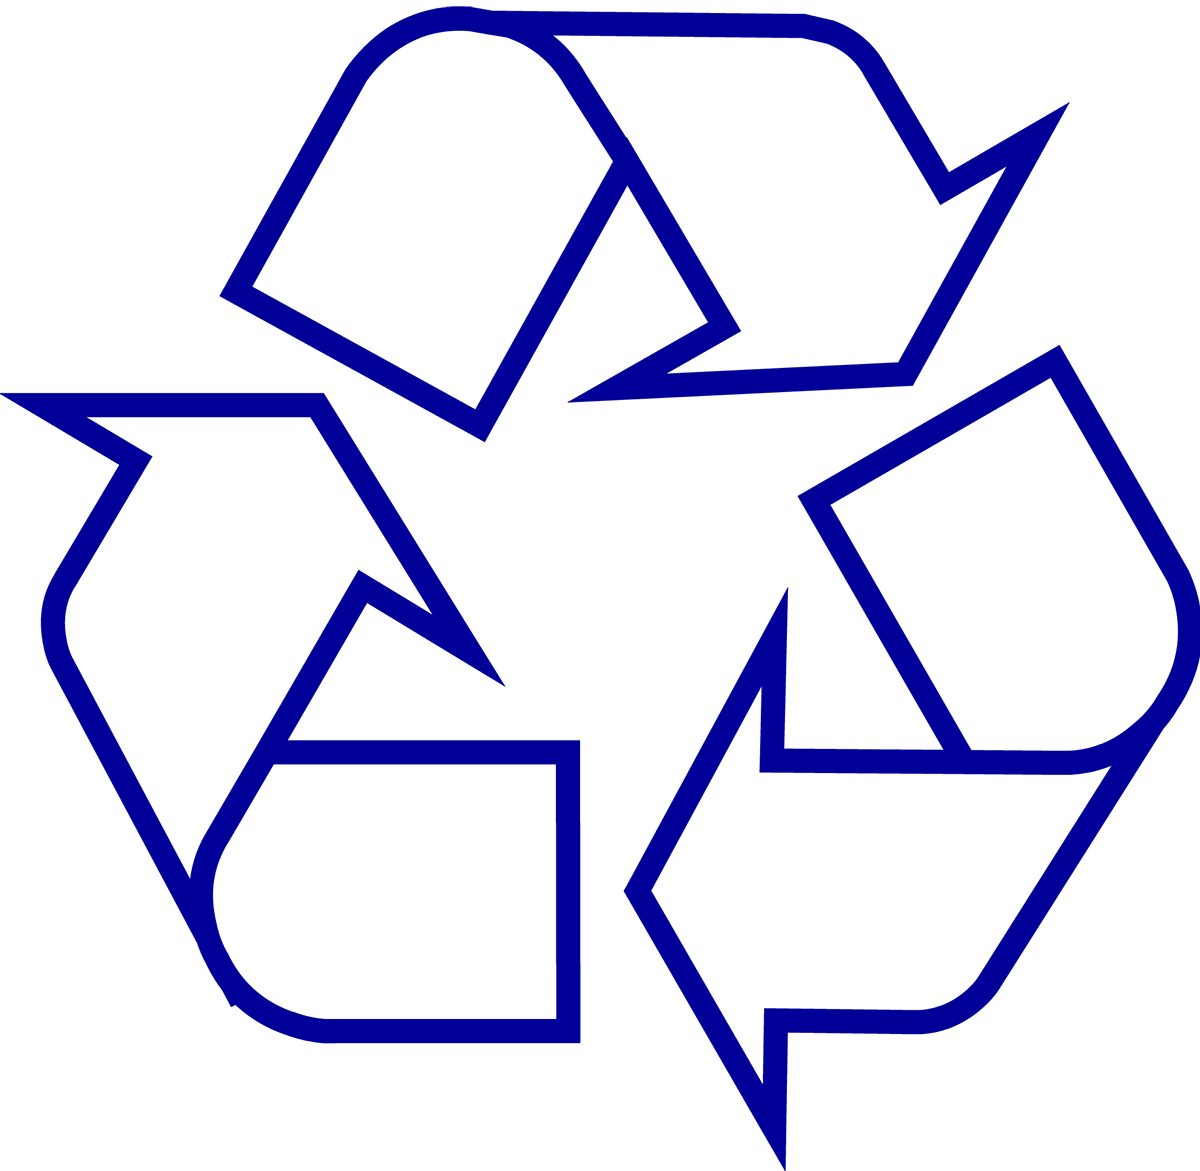 Blue I Logo - Recycling Symbol the Original Recycle Logo